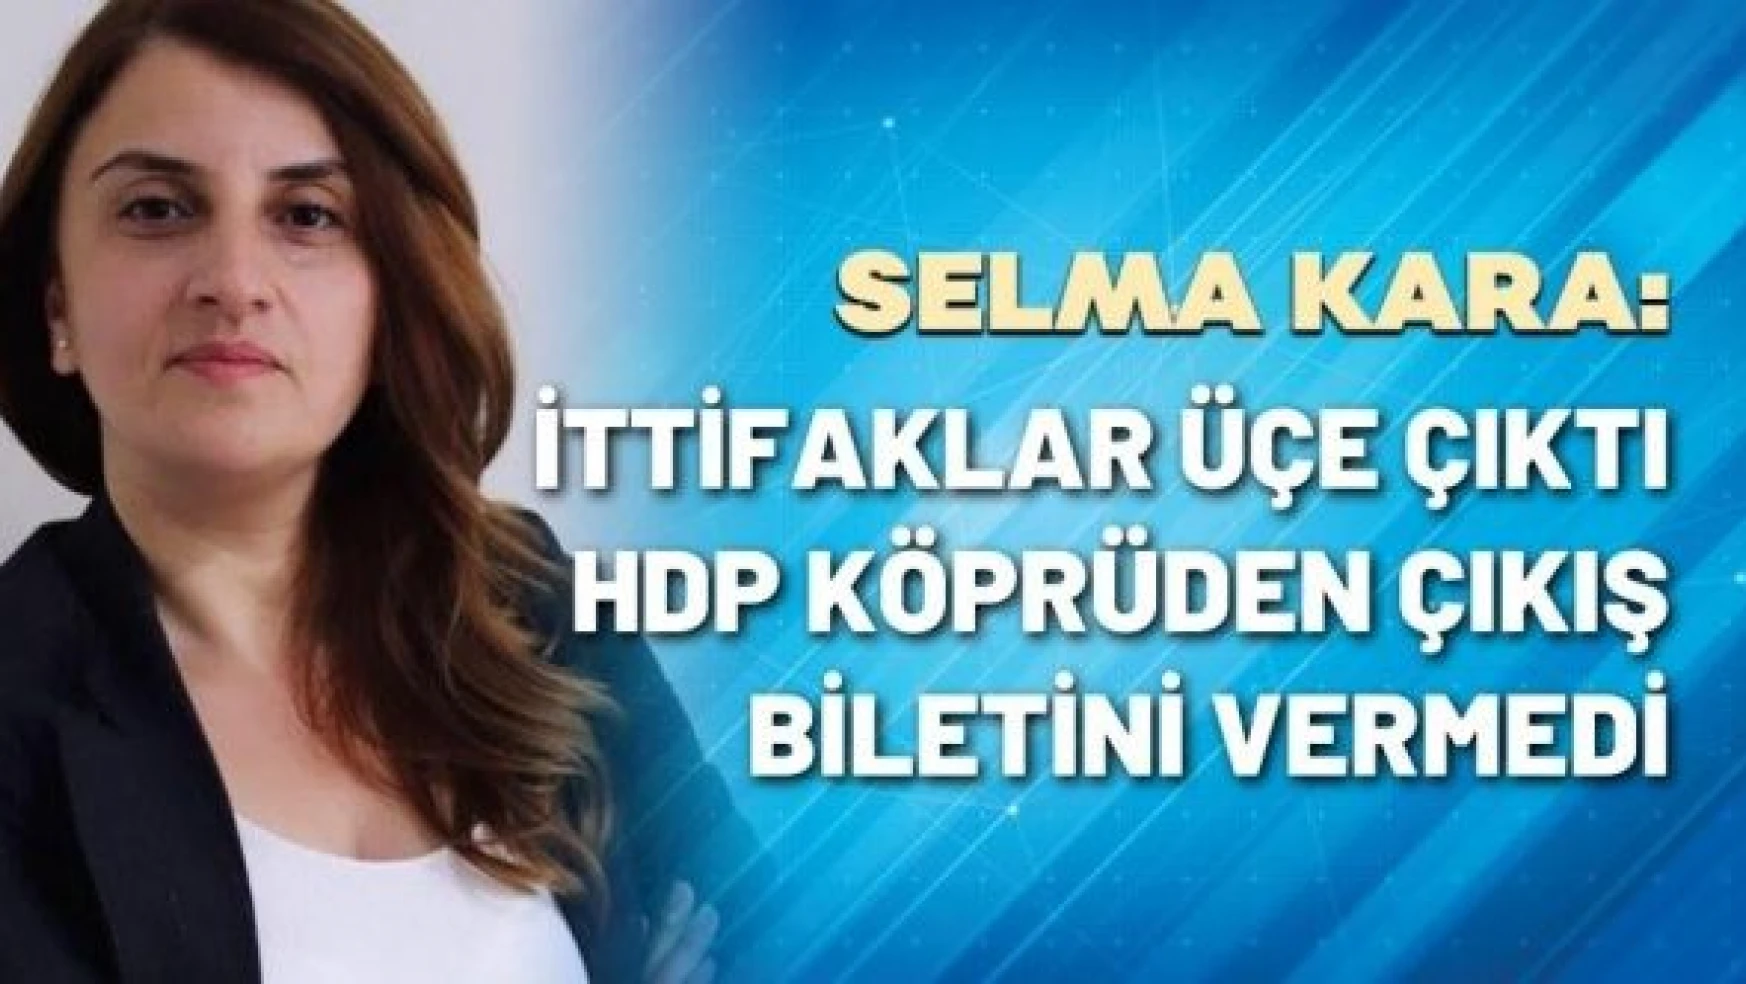 Selma Kara yazdı: "İttifaklar üçe çıktı, HDP köprüden çıkış biletini vermedi"